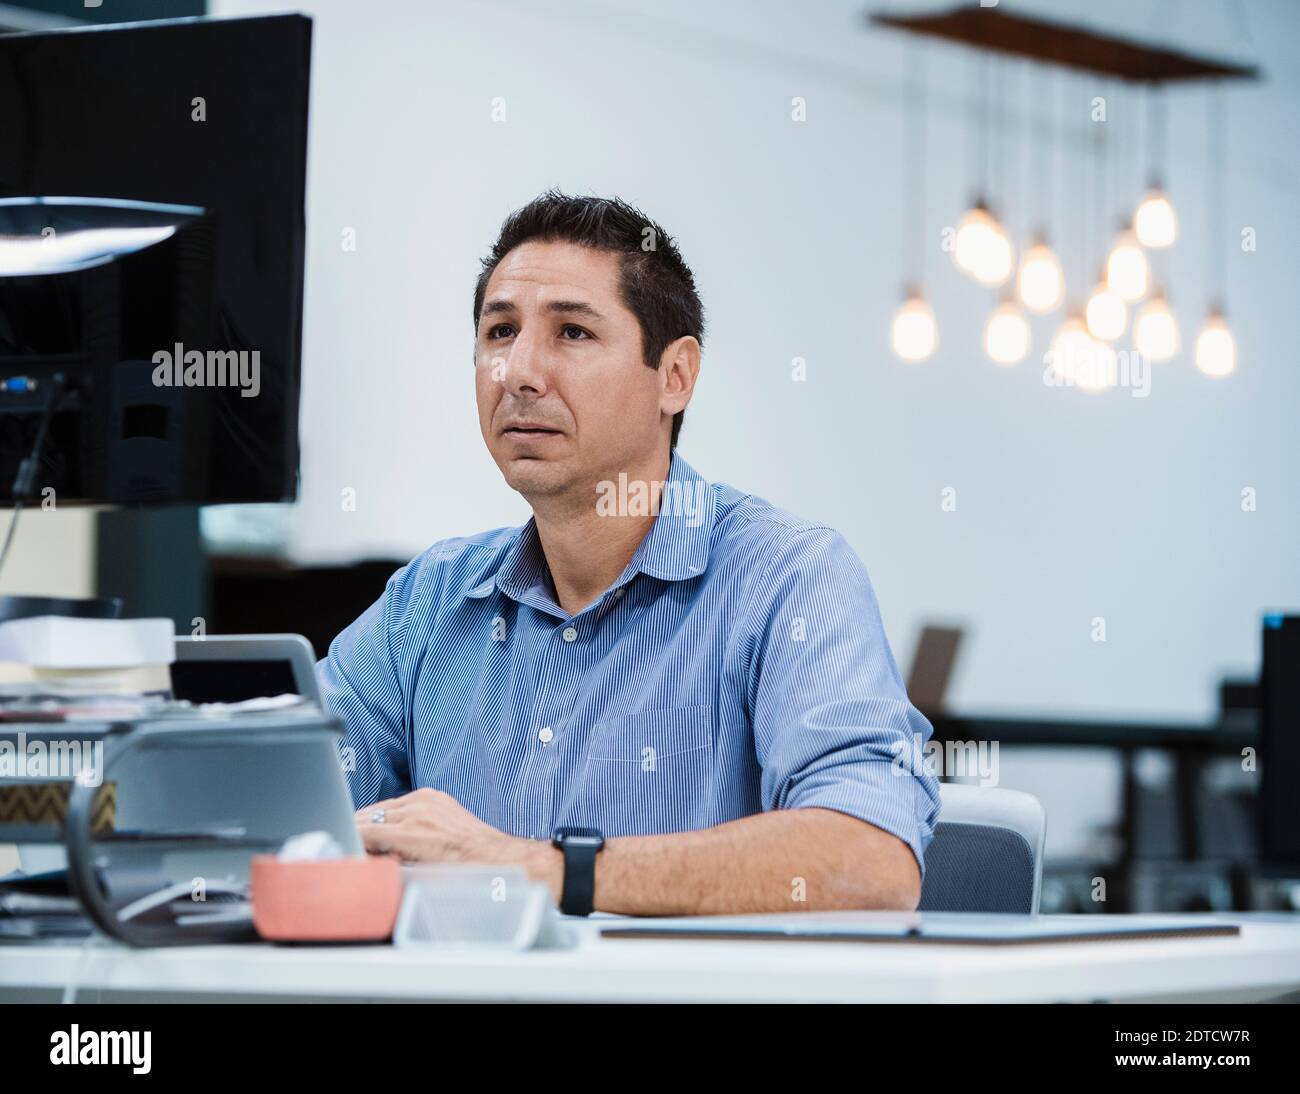 Man at office desk Banque D'Images